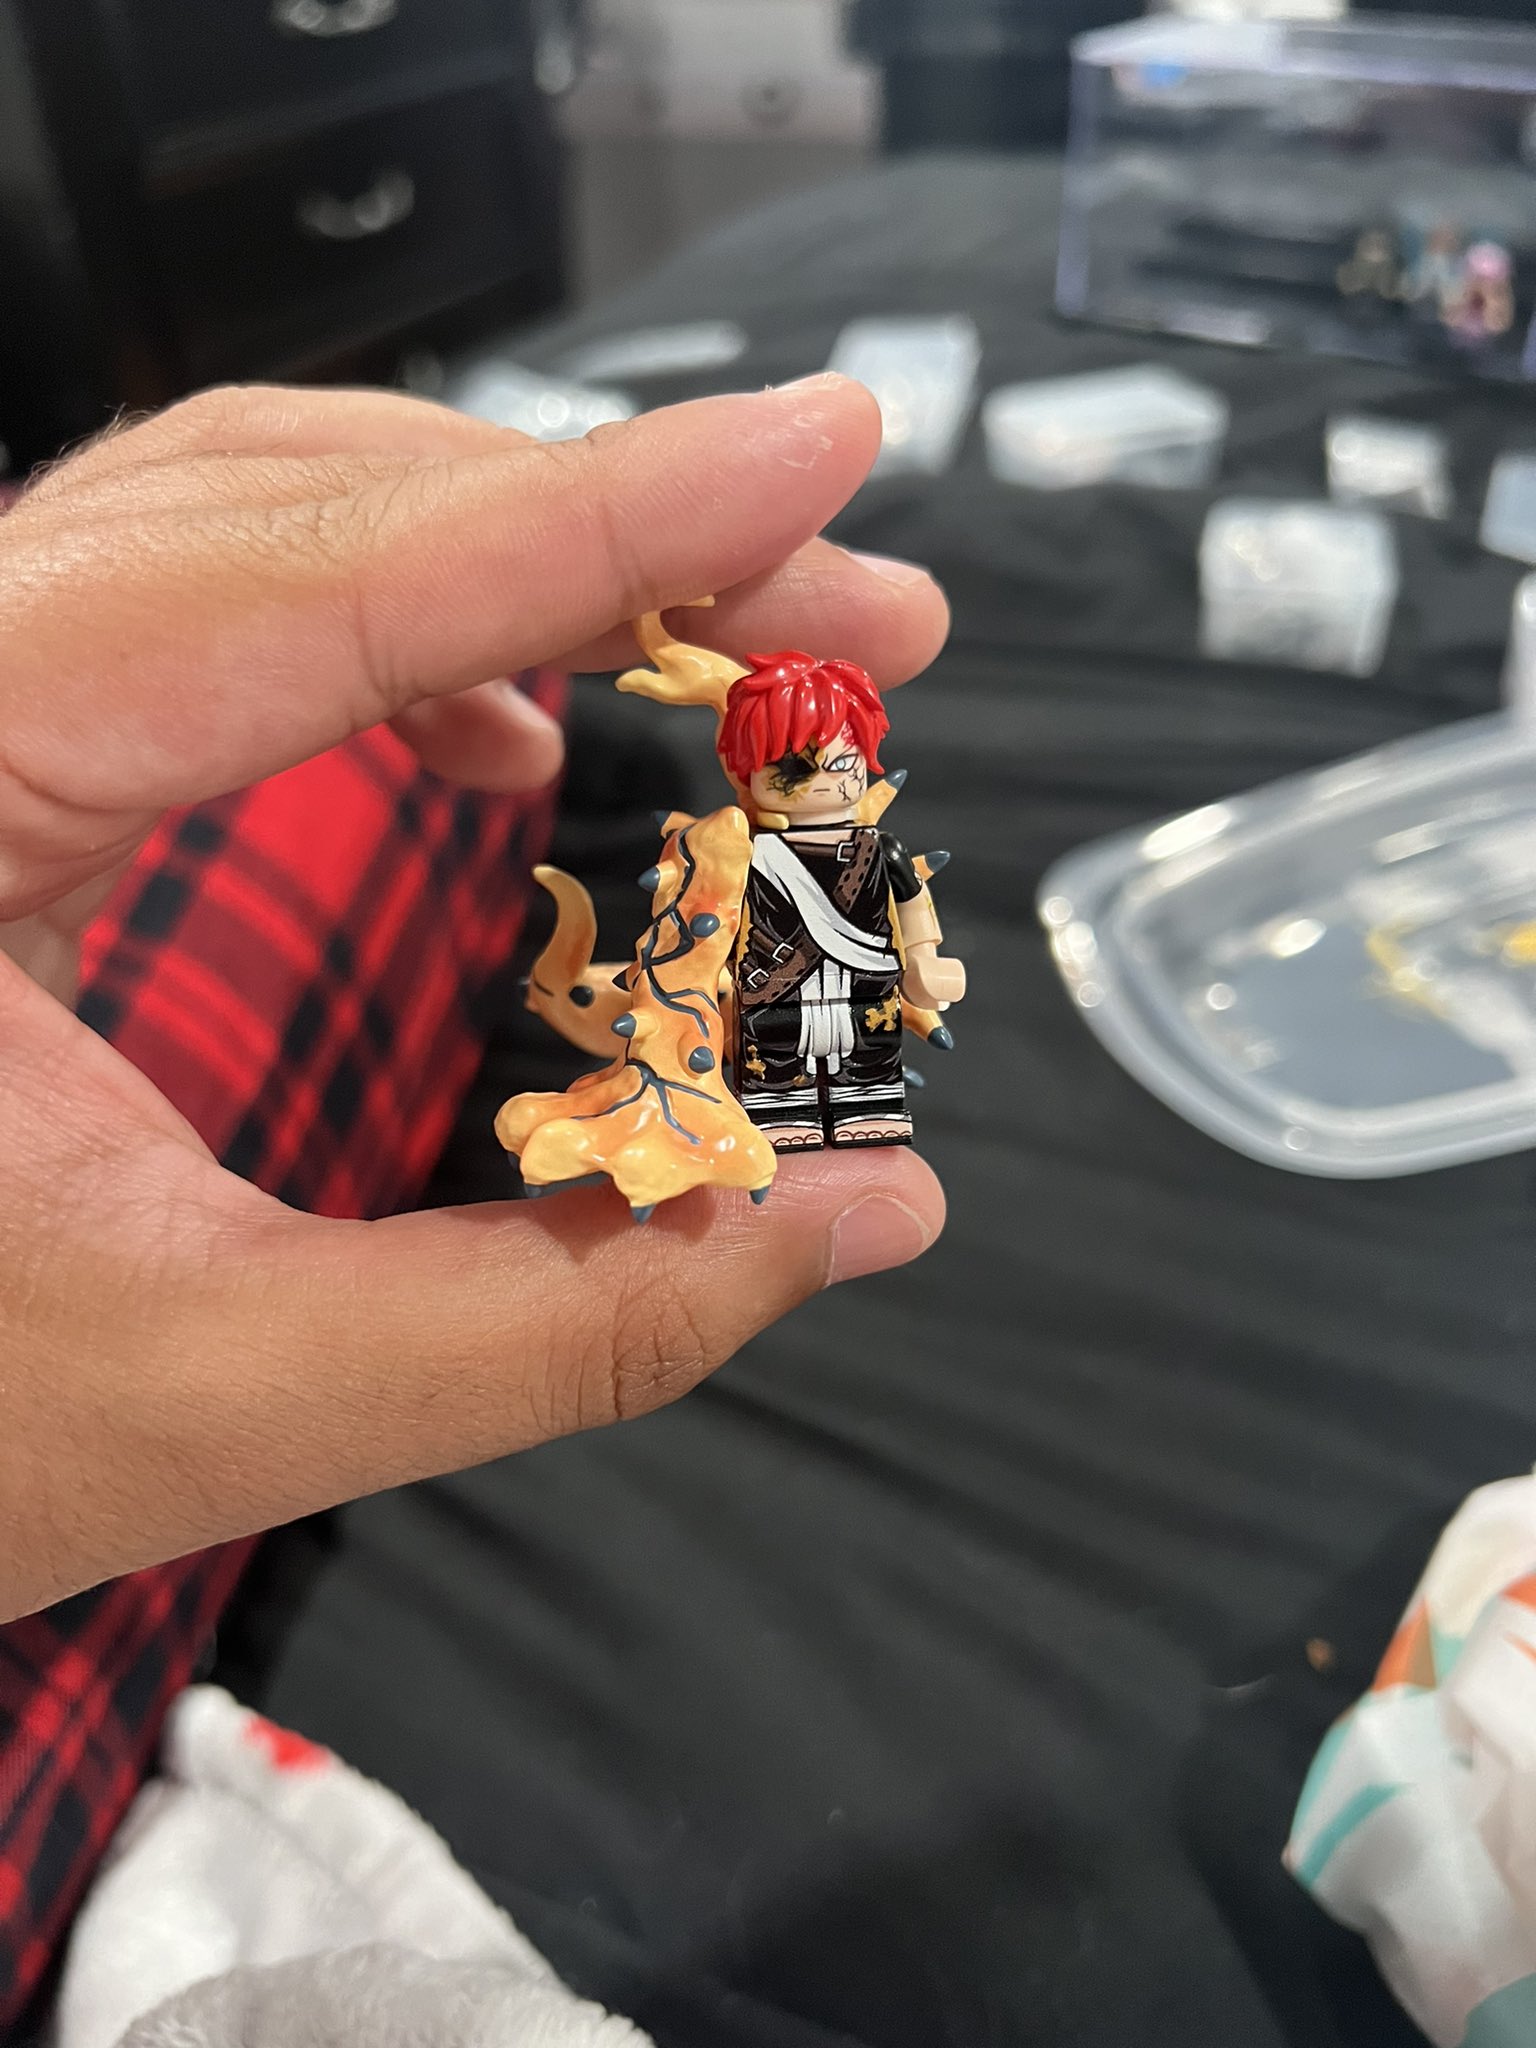 🌬NeVii, on X: Gaara [Manga Brick] Custom Lego Minifigure: ~This